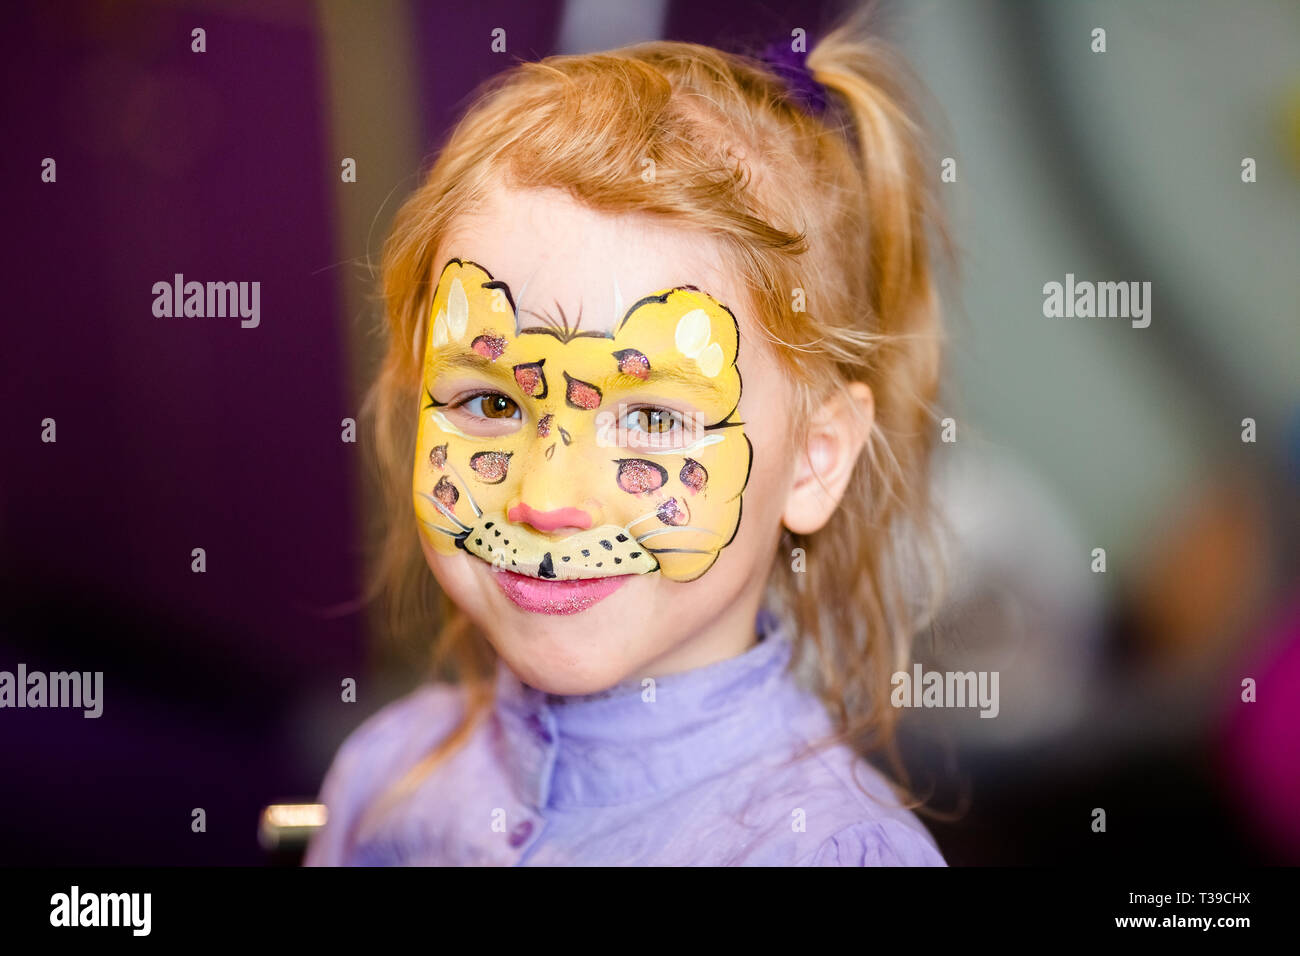 kids leopard face paint